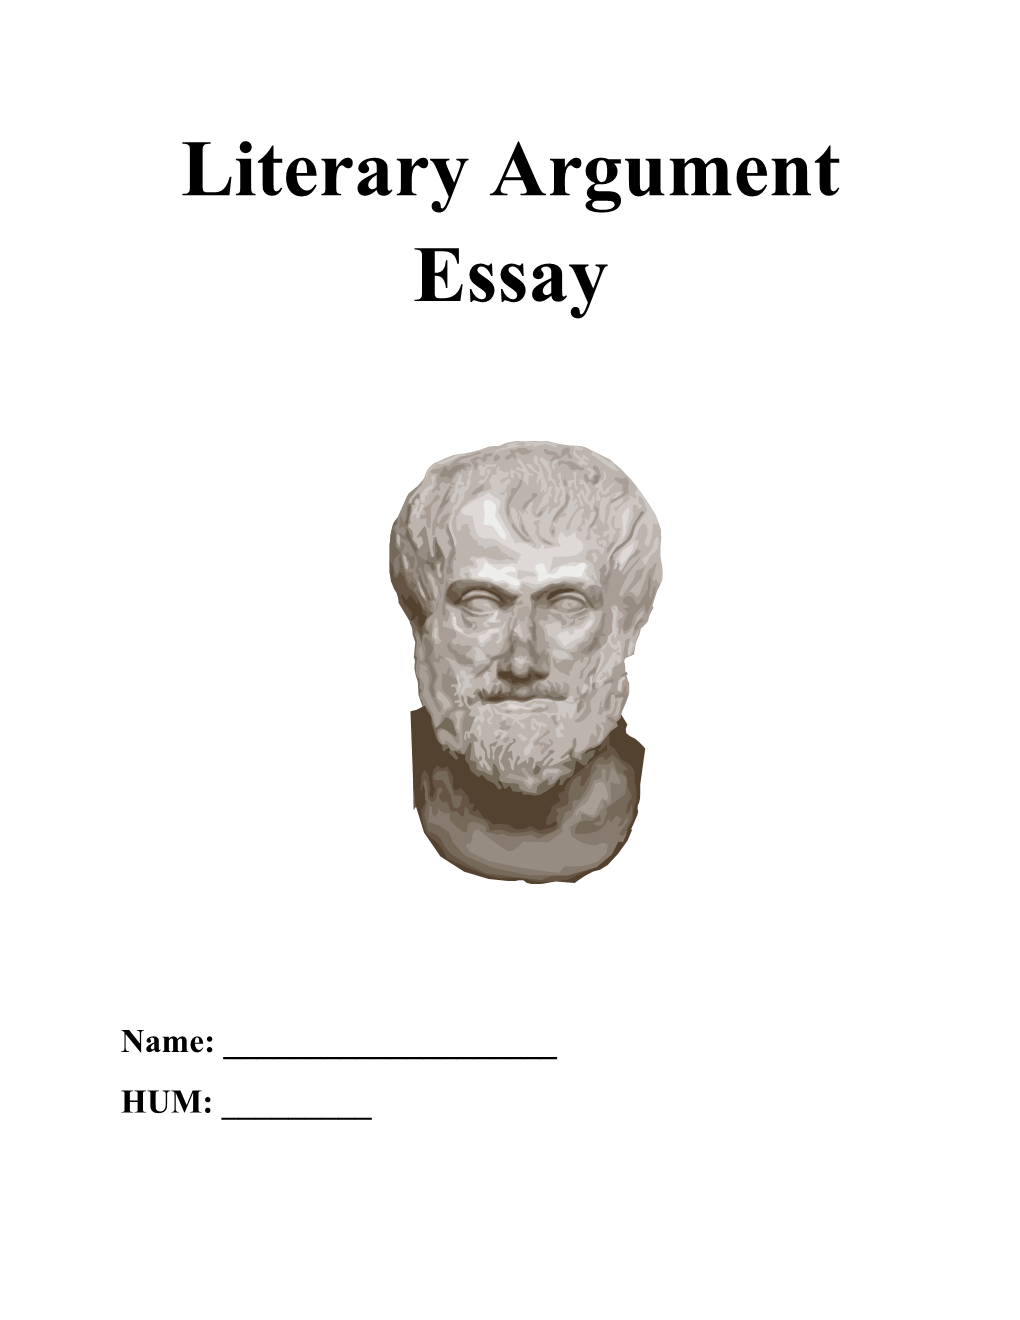 Lit Argument Essay Assignment